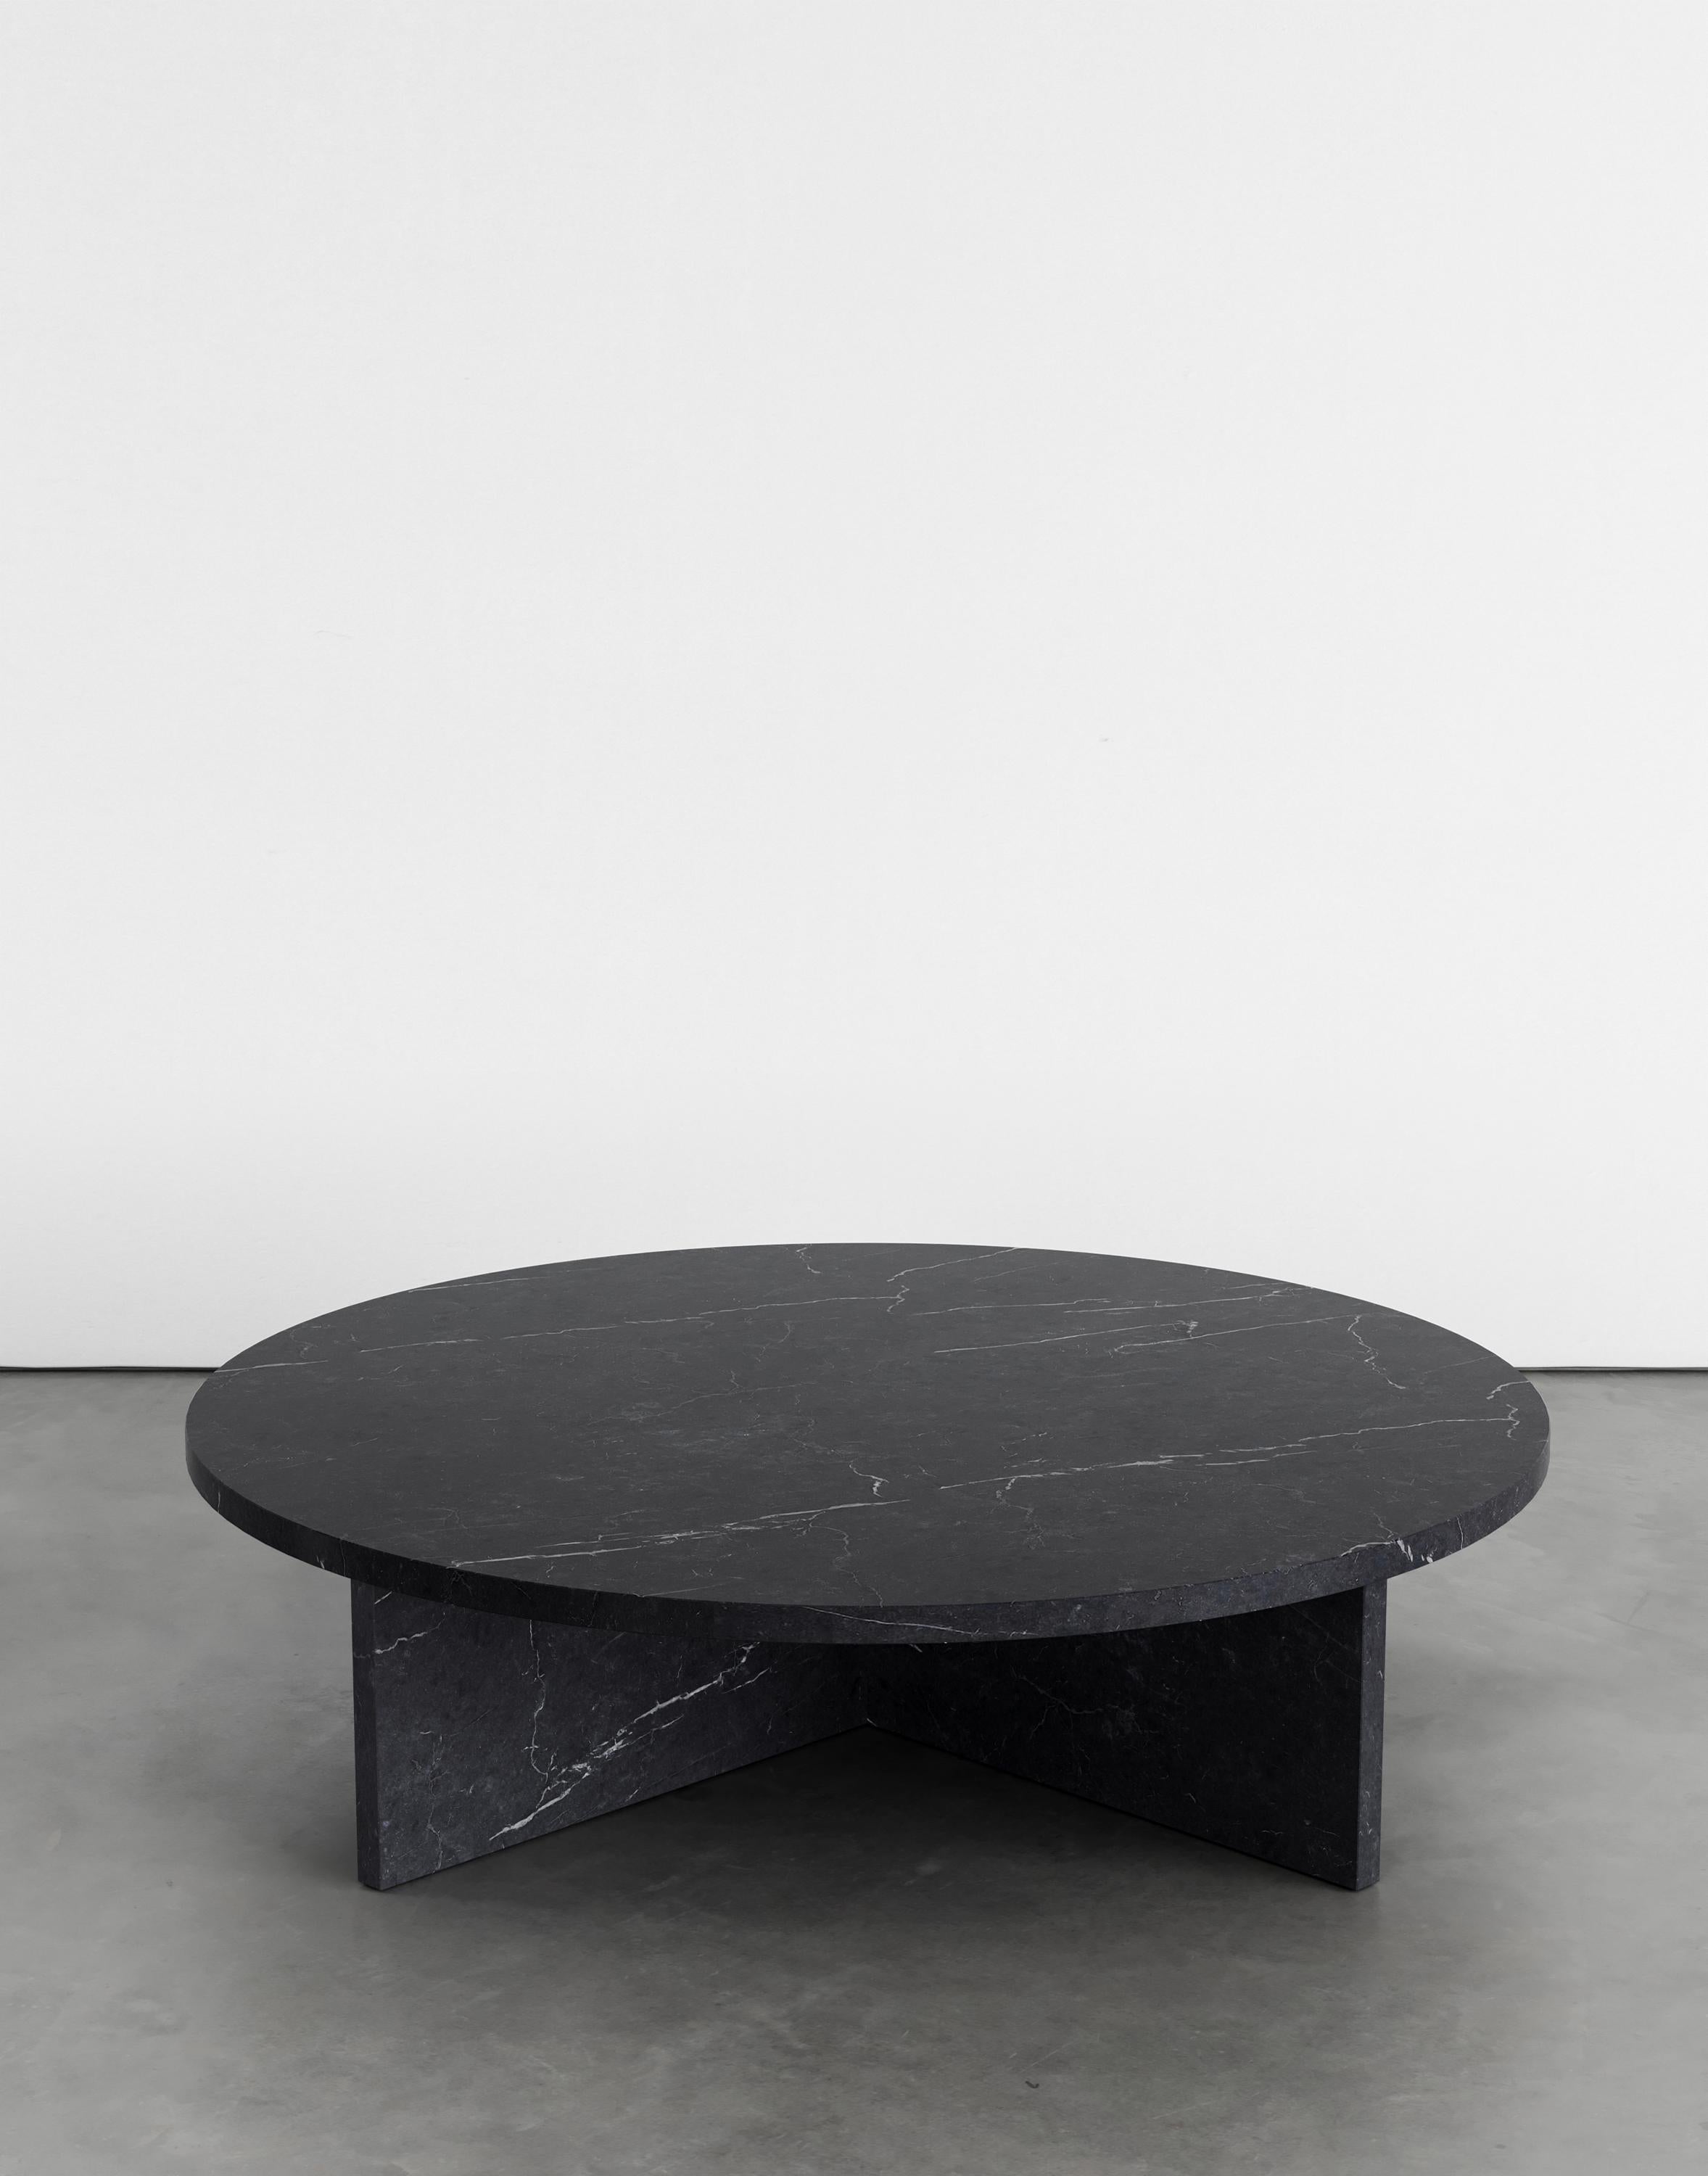 Table basse Rosa 120 par Agglomerati 
Dimensions : L 120 x H 30 cm 
Matériaux : Marquina noir. Disponible dans d'autres pierres. 

Agglomerati est un studio londonien qui crée des meubles en pierre originaux. Établi en 2019 par le designer